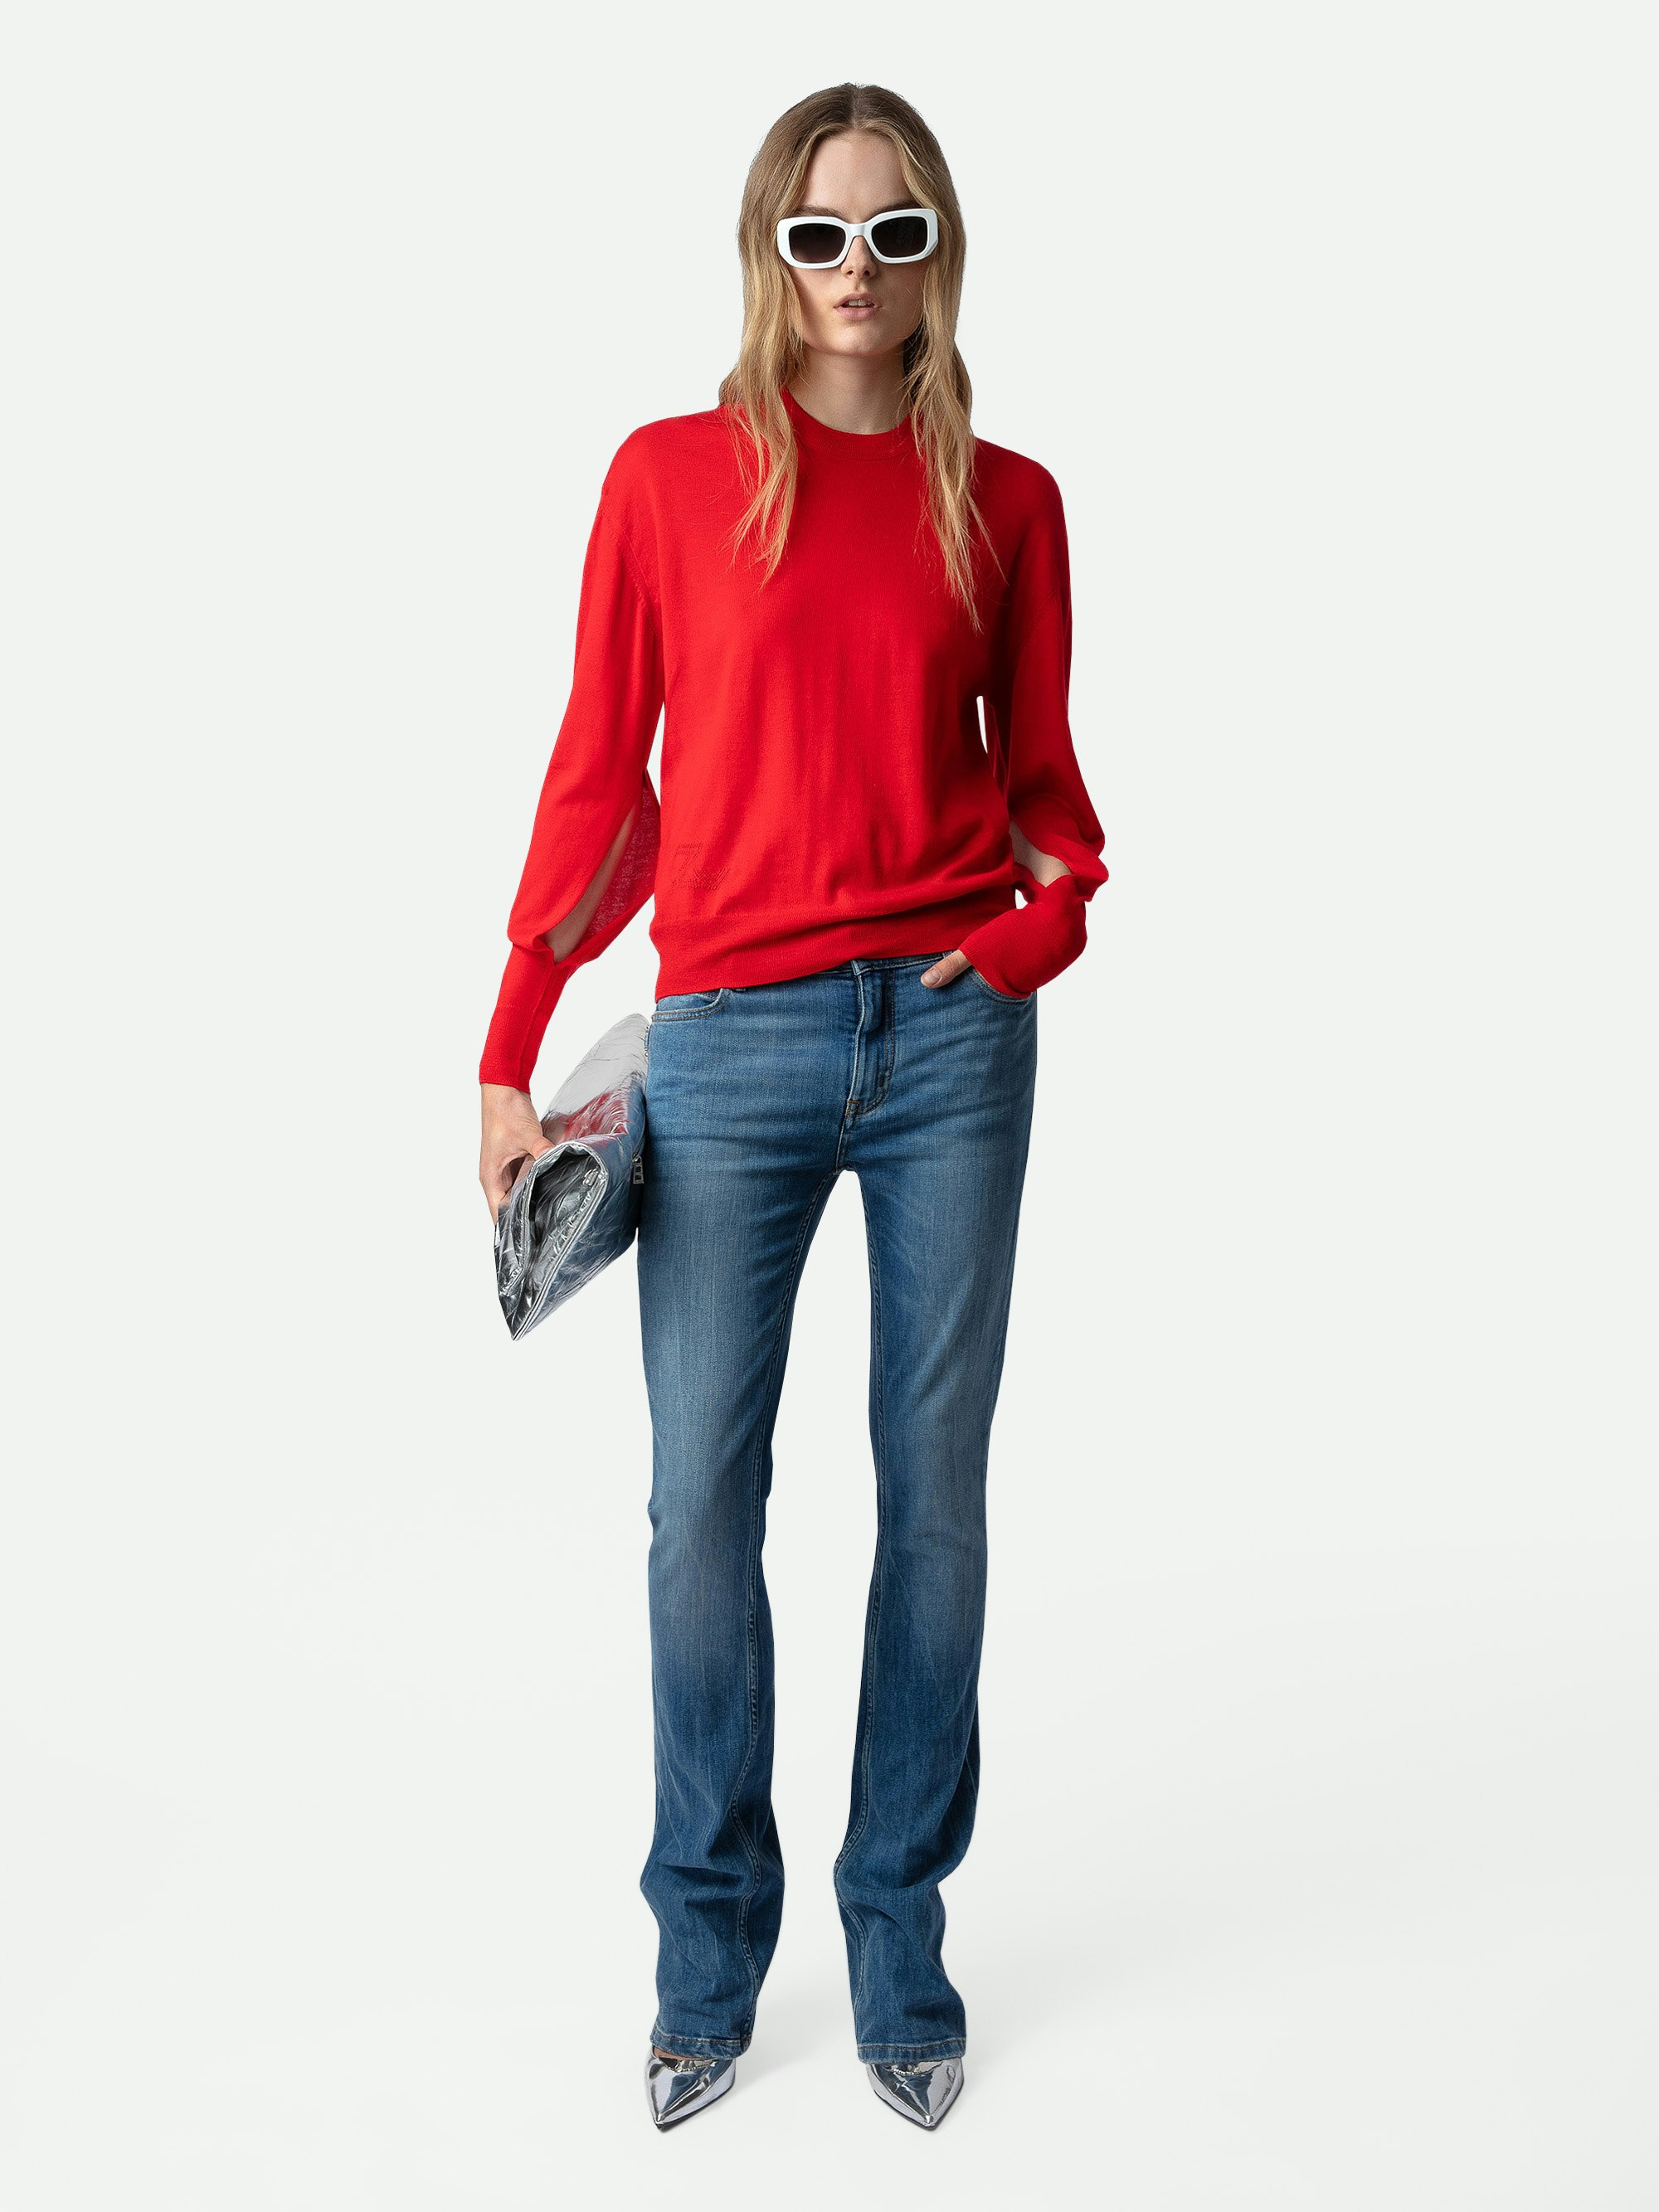 Maglione Emmy 100% Lana Merino - Maglione in 100% lana merino rosso girocollo e maniche lunghe con cut-out.